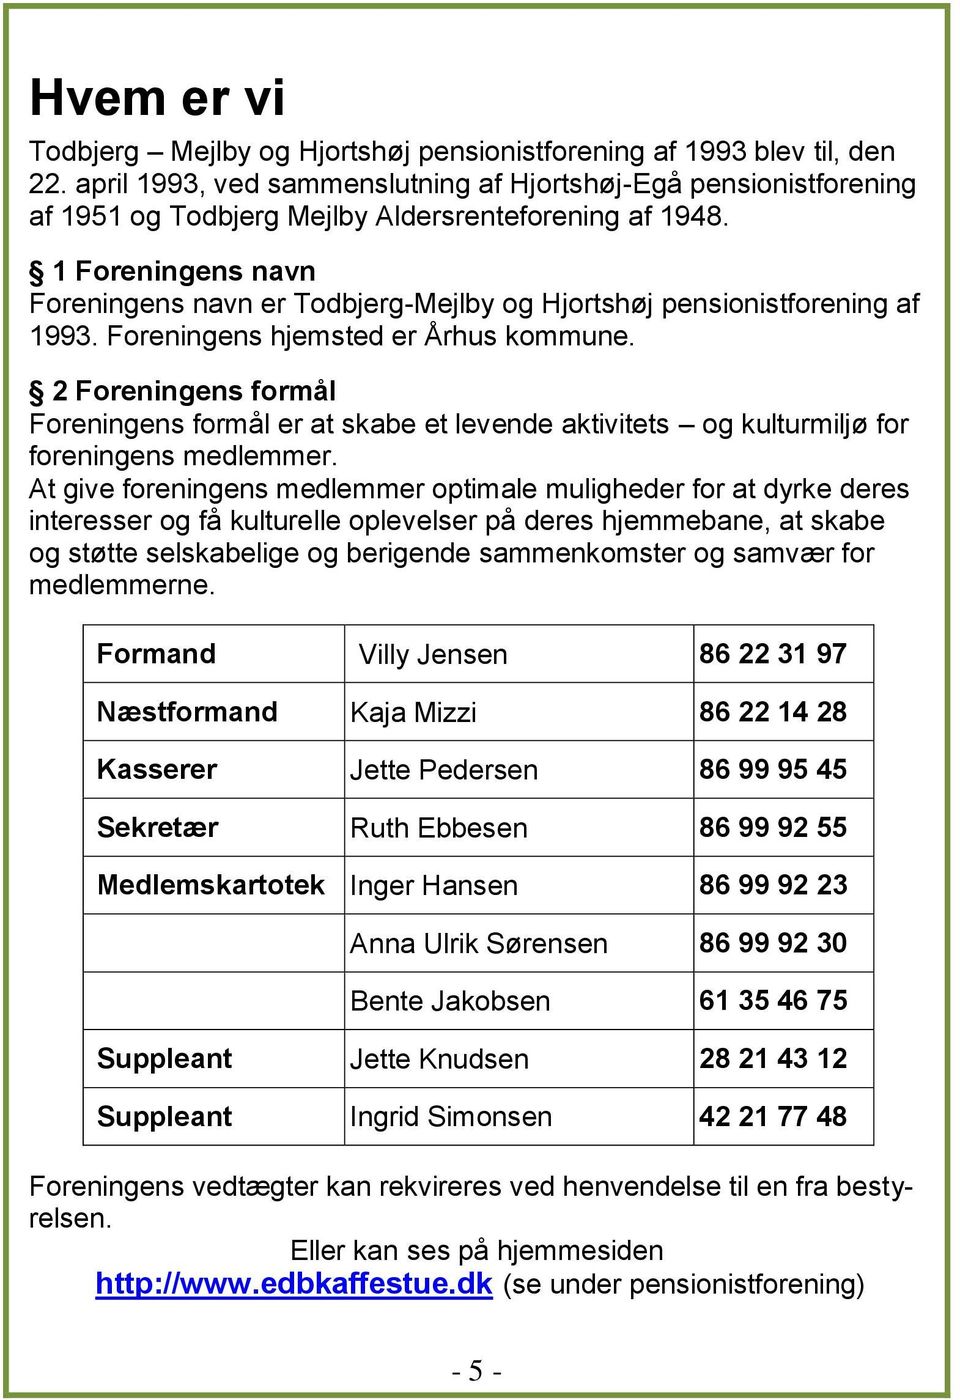 1 Foreningens navn Foreningens navn er Todbjerg-Mejlby og Hjortshøj pensionistforening af 1993. Foreningens hjemsted er Århus kommune.